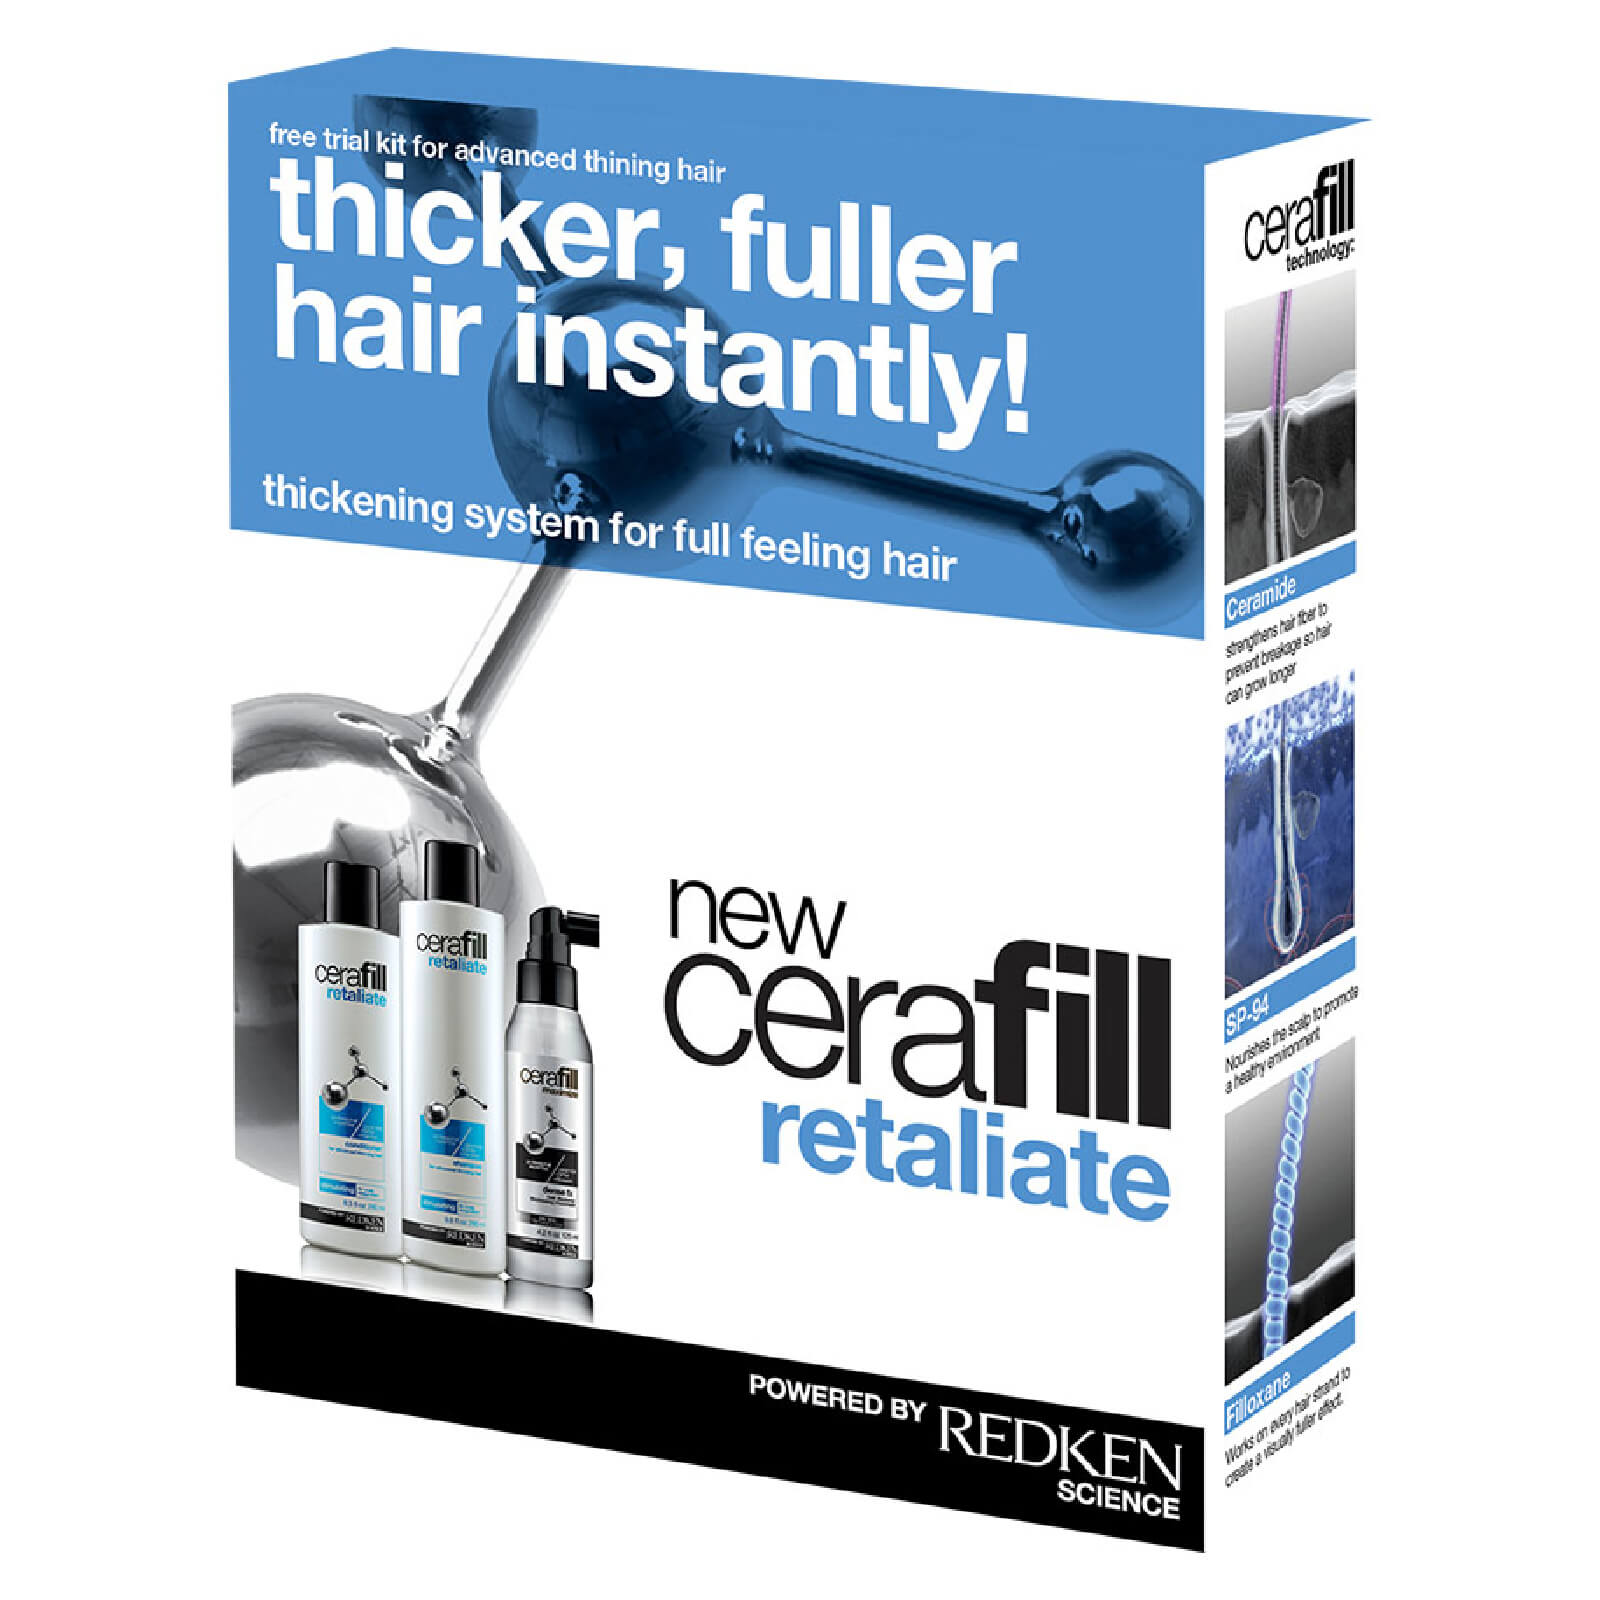 Redken Cerafill Retaliate Kit For Advanced Thinning Hair 22 3oz Skinstore